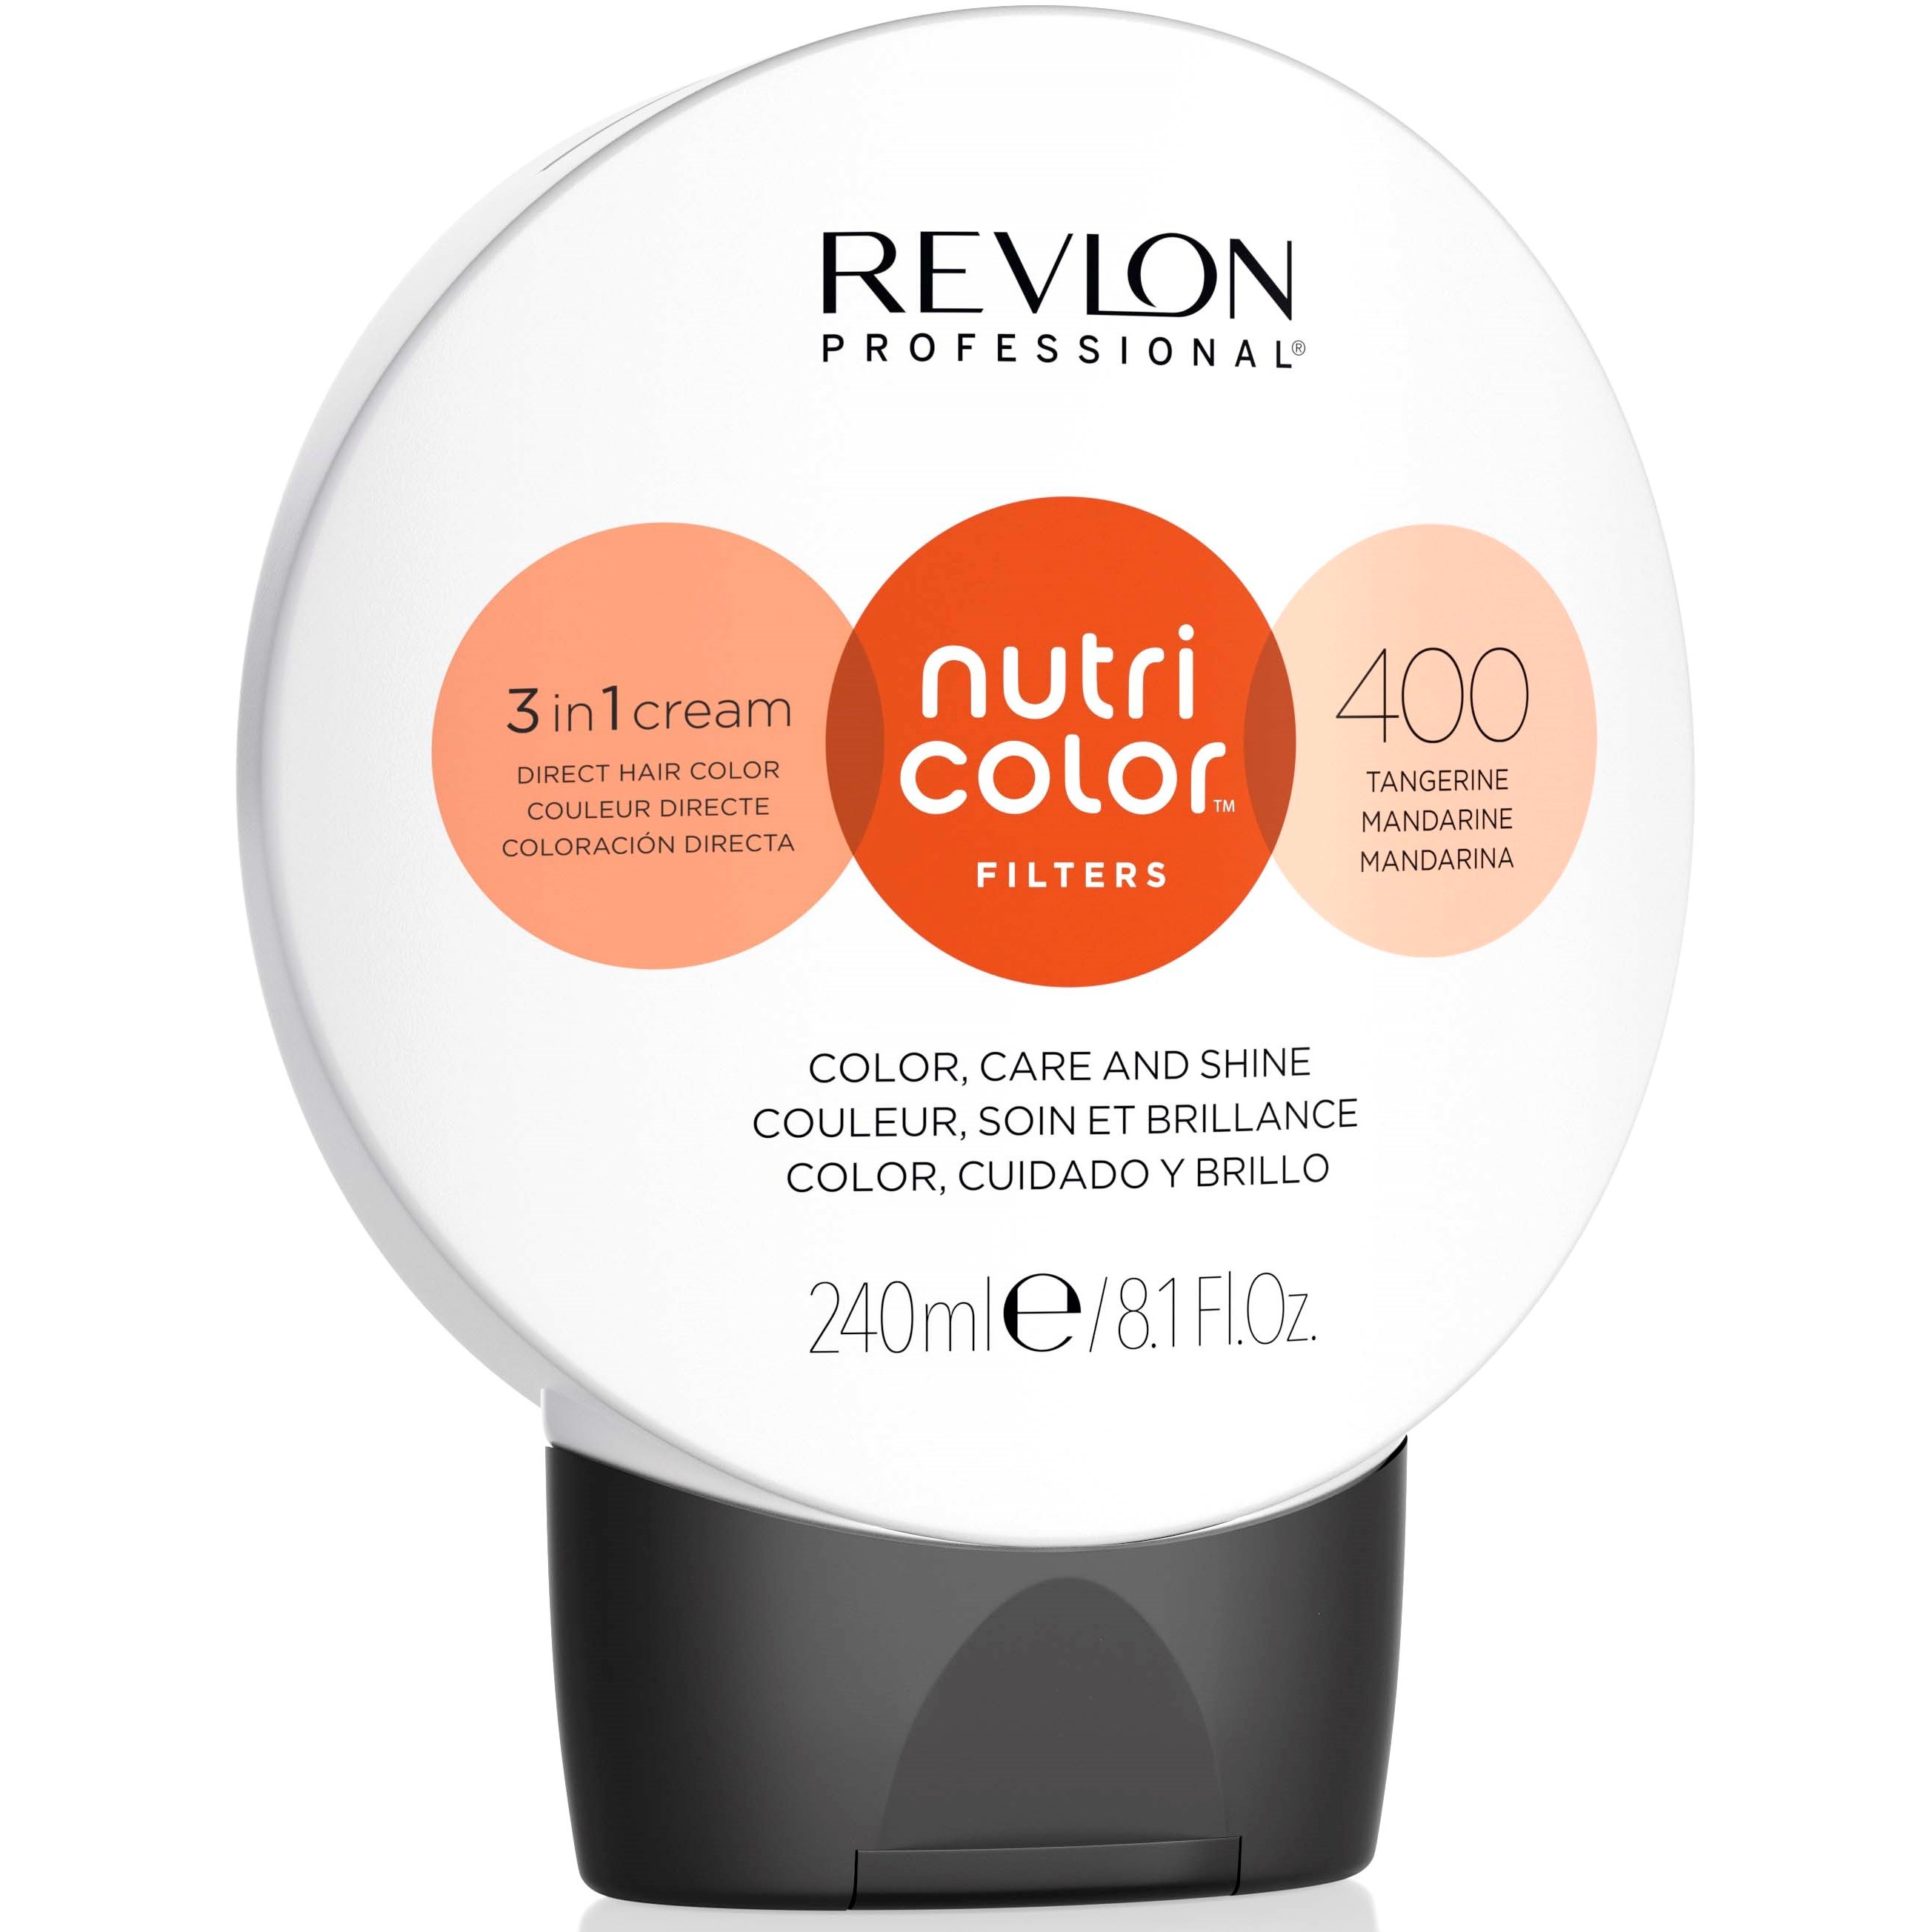 Läs mer om Revlon Nutri Color Filters 400 Tangerine